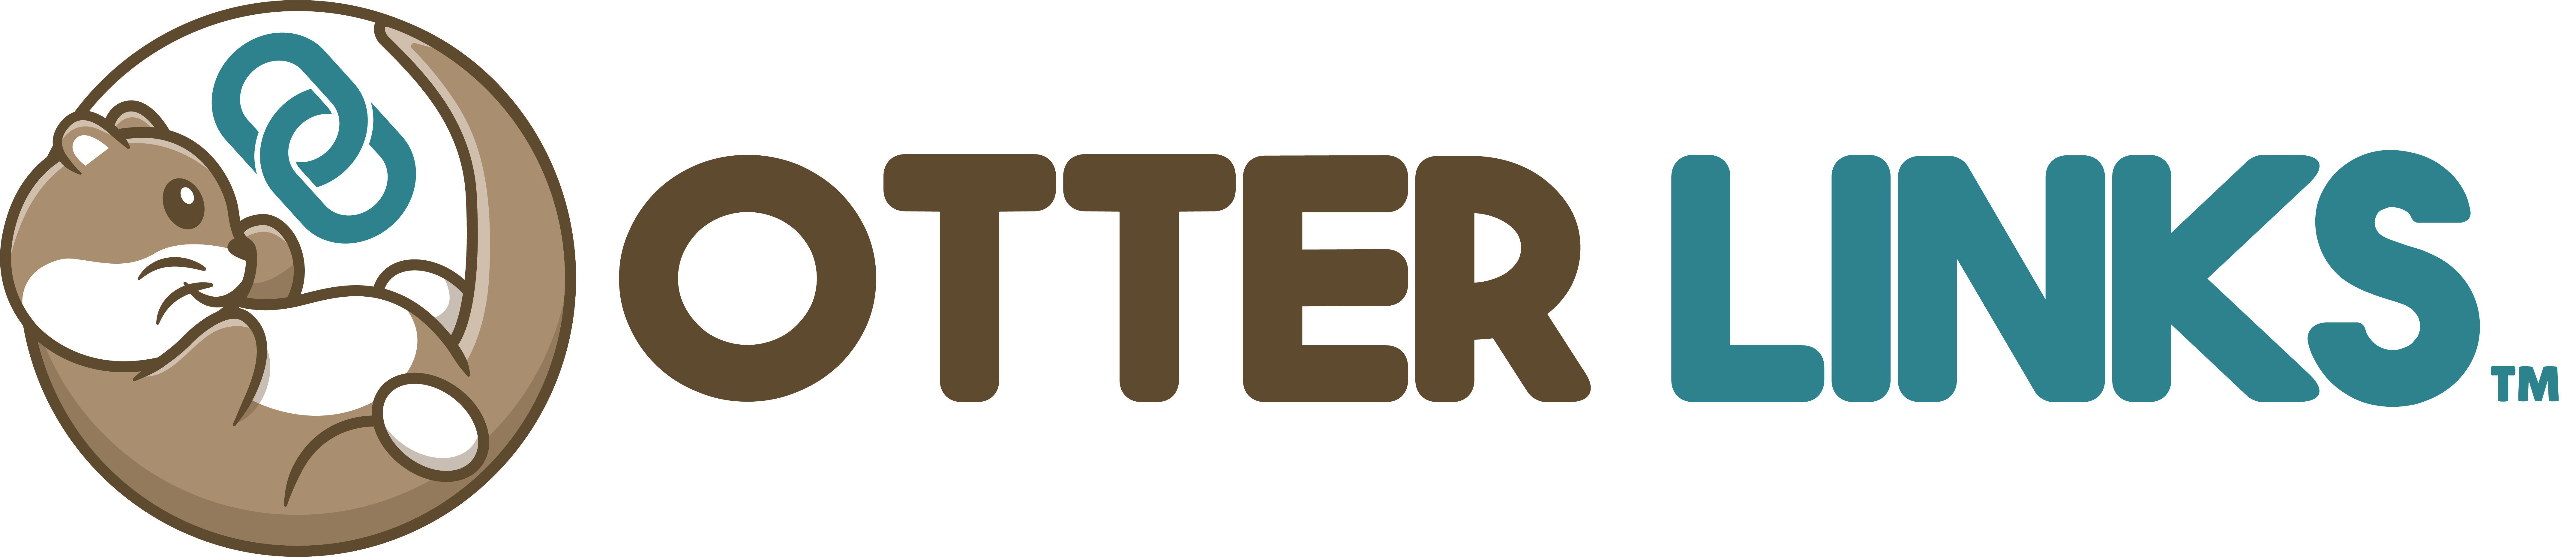 Otter Links Logo Trademark